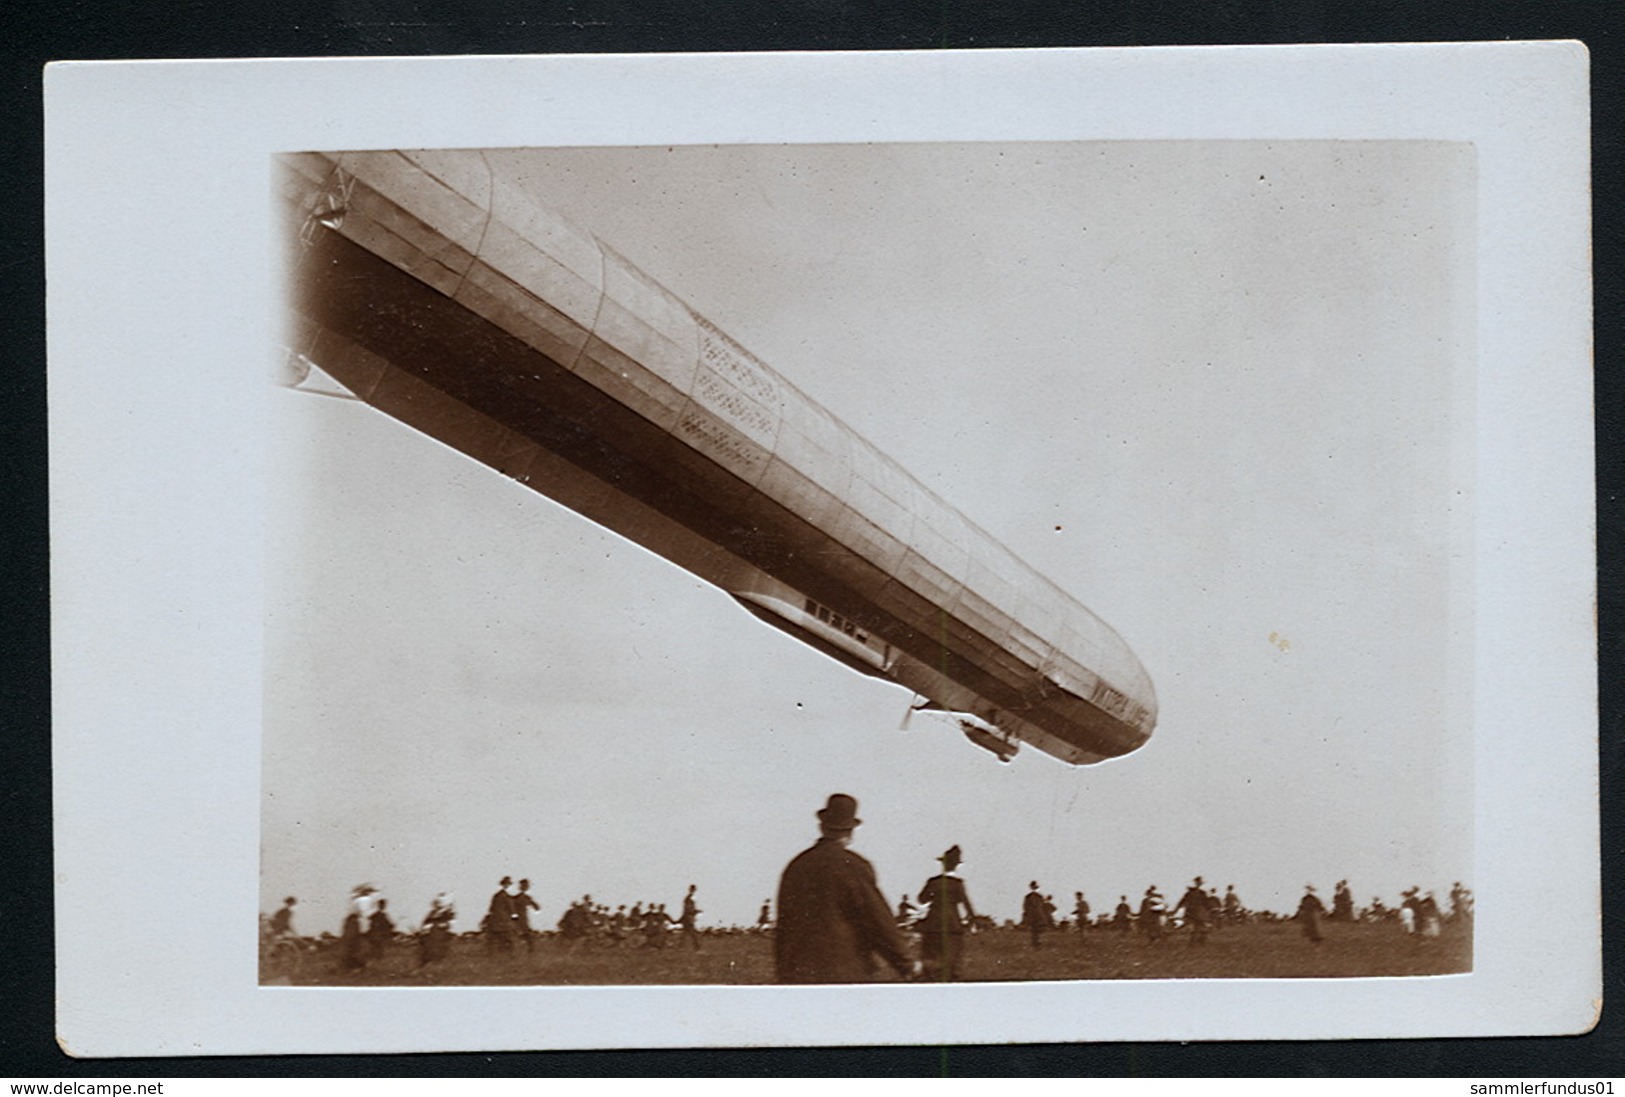 Foto AK/CP  Zeppelin Luftschiff Victoria Luise In Worms  Ungel/uncirc.1913  Erhaltung/Cond. 2  Nr. 00614 - Airships